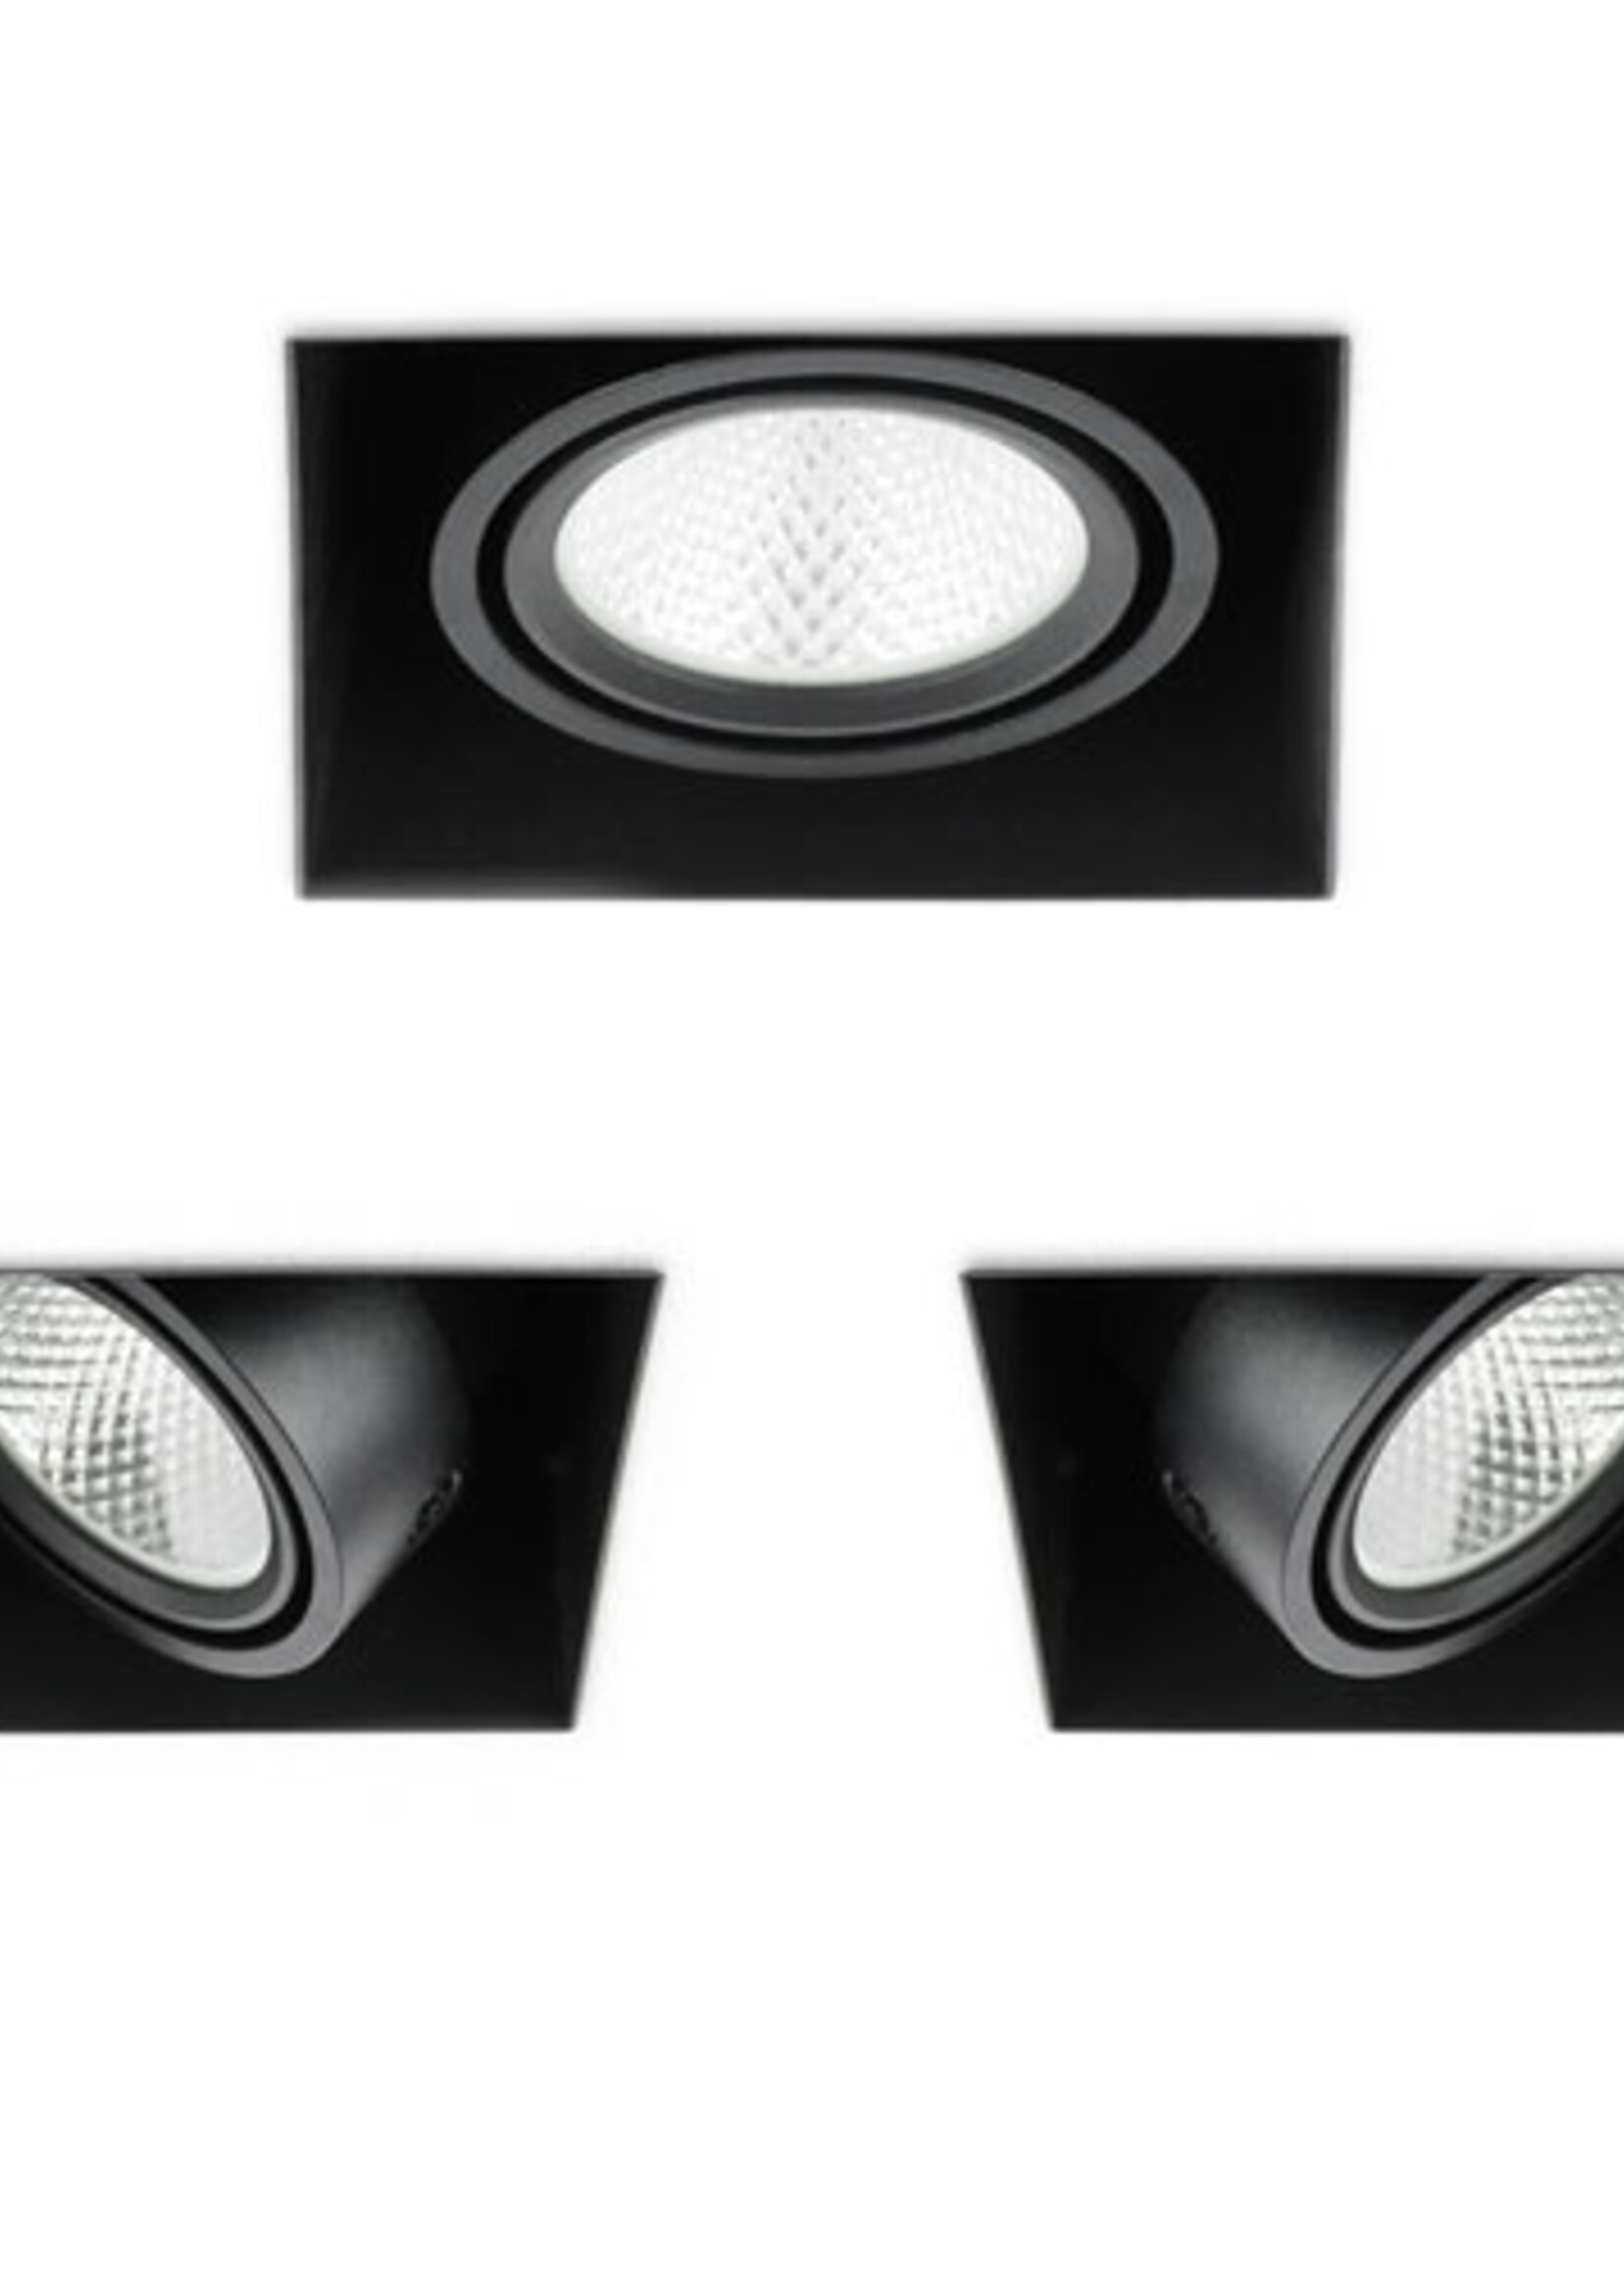 SOLISTECH Zwarte LED Inbouwspot 6W Trimless 3000K warm wit  vierkant 89x89mm kantelbaar draaibaar